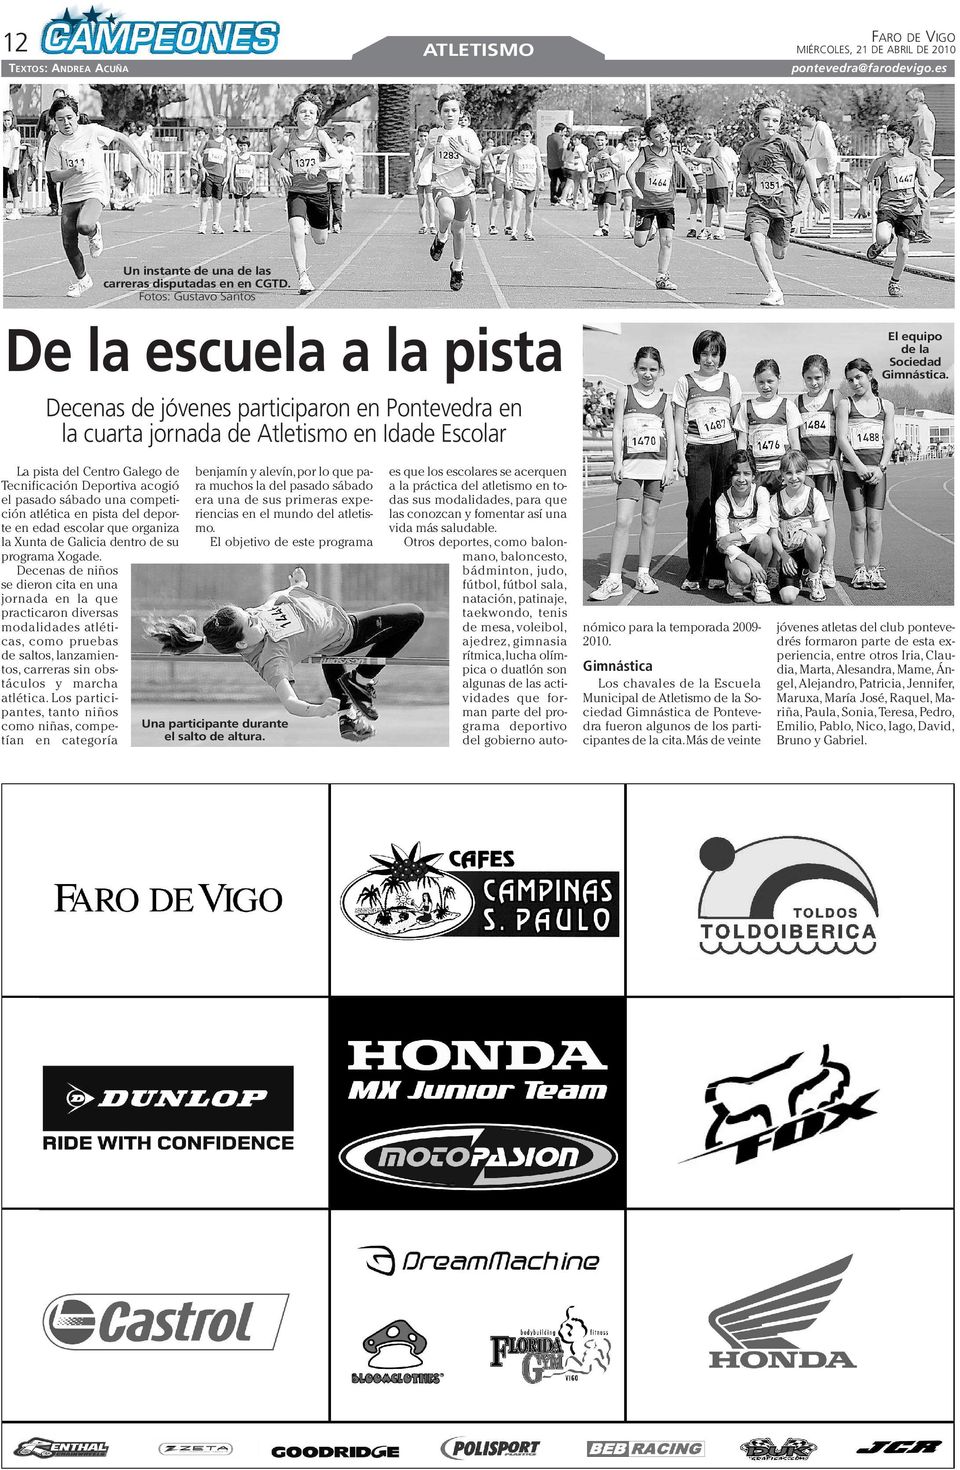 La pista del Centro Galego de Tecnificación Deportiva acogió el pasado sábado una competición atlética en pista del deporte en edad escolar que organiza la Xunta de Galicia dentro de su programa